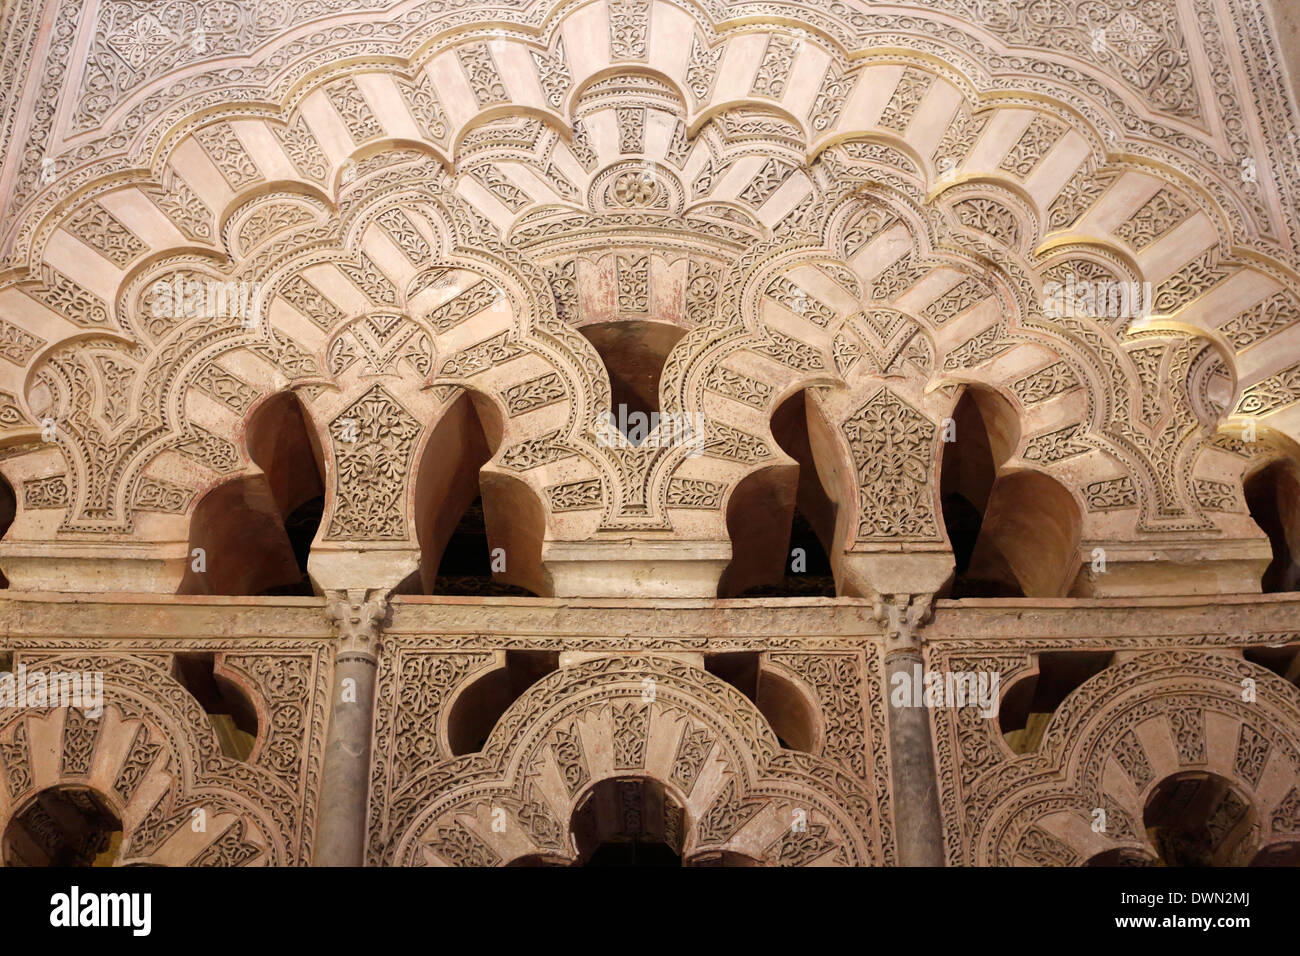 Sculptures de passage à la Mezquita de Cordoue (la grande mosquée), UNESCO World Heritage Site, Cordoue, Andalousie, Espagne, Europe Banque D'Images